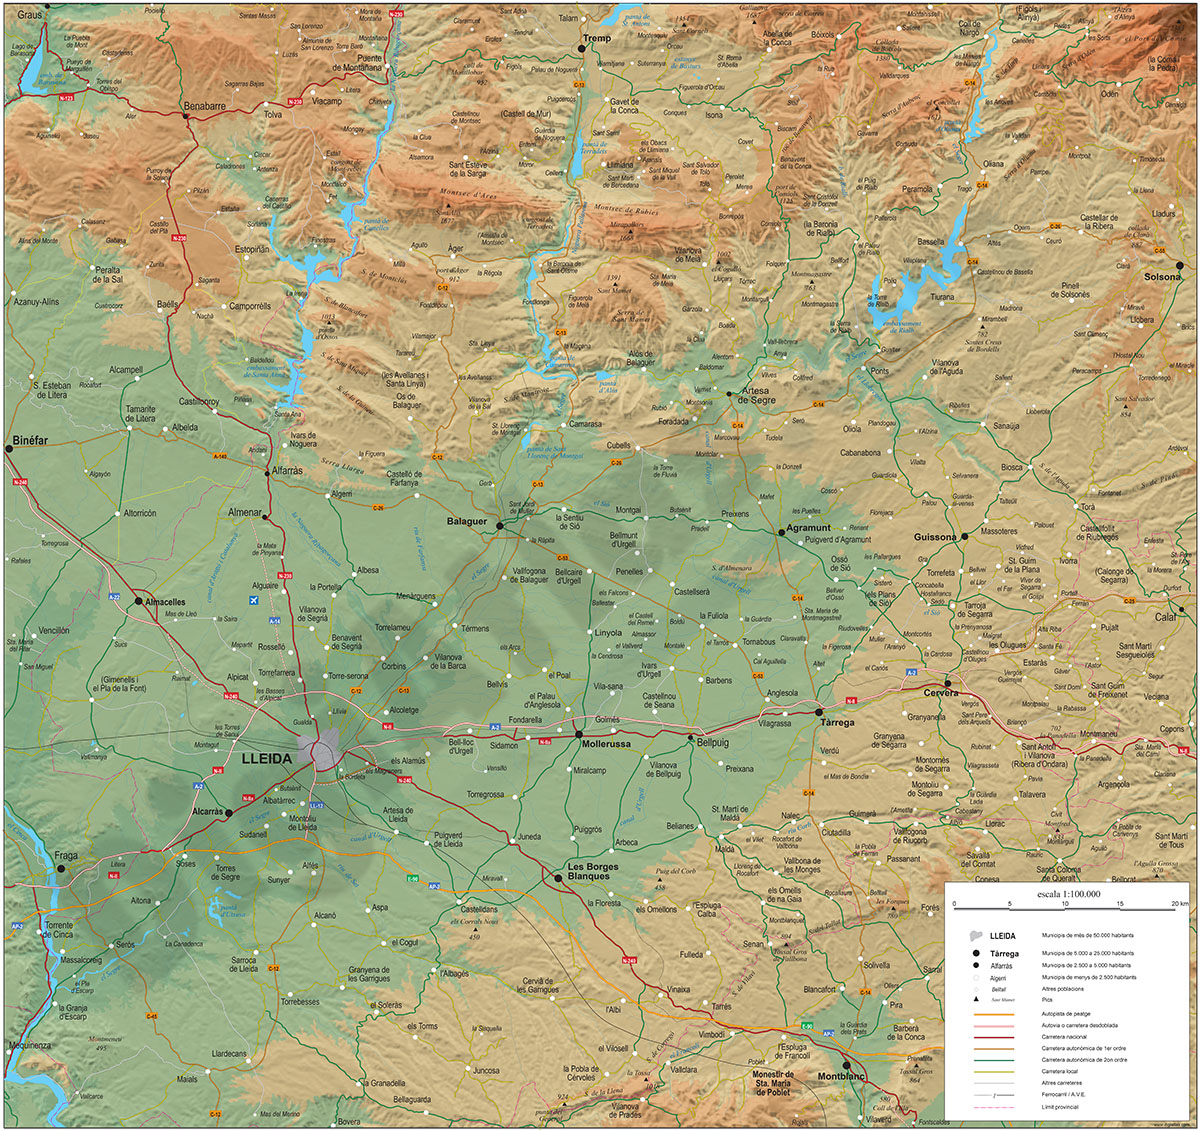 Mapa geográfico de Lleida y la Franja de Ponent